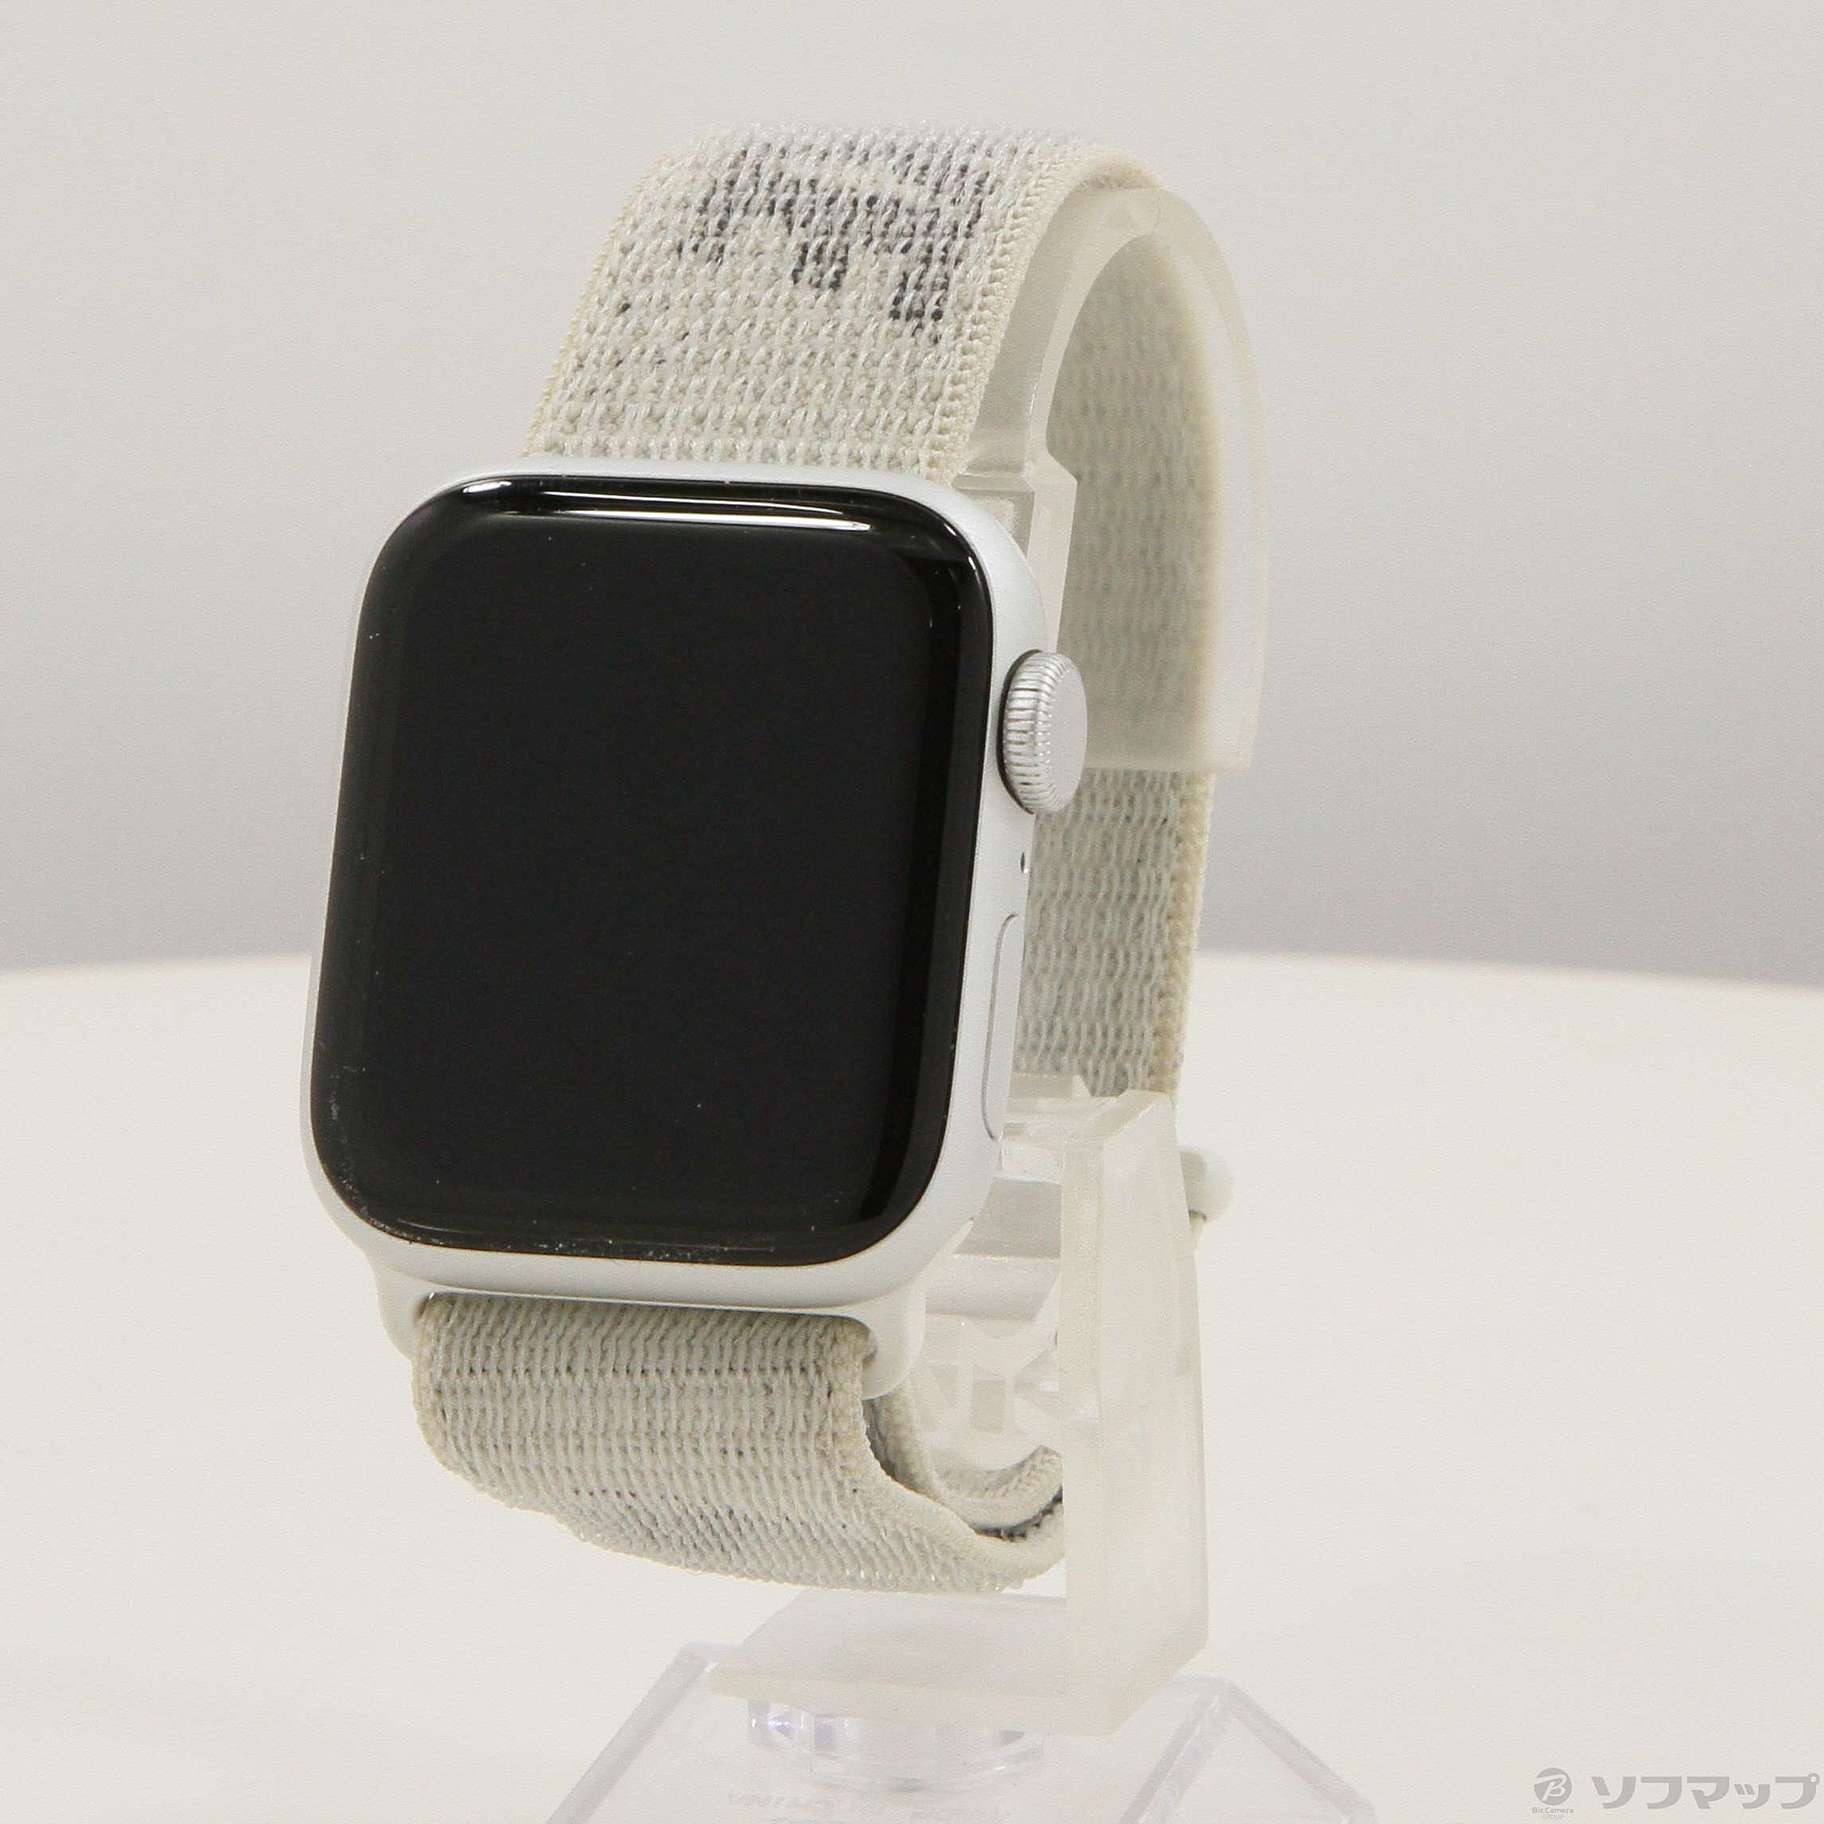 Apple Watch Nike SE GPS 40mm シルバー